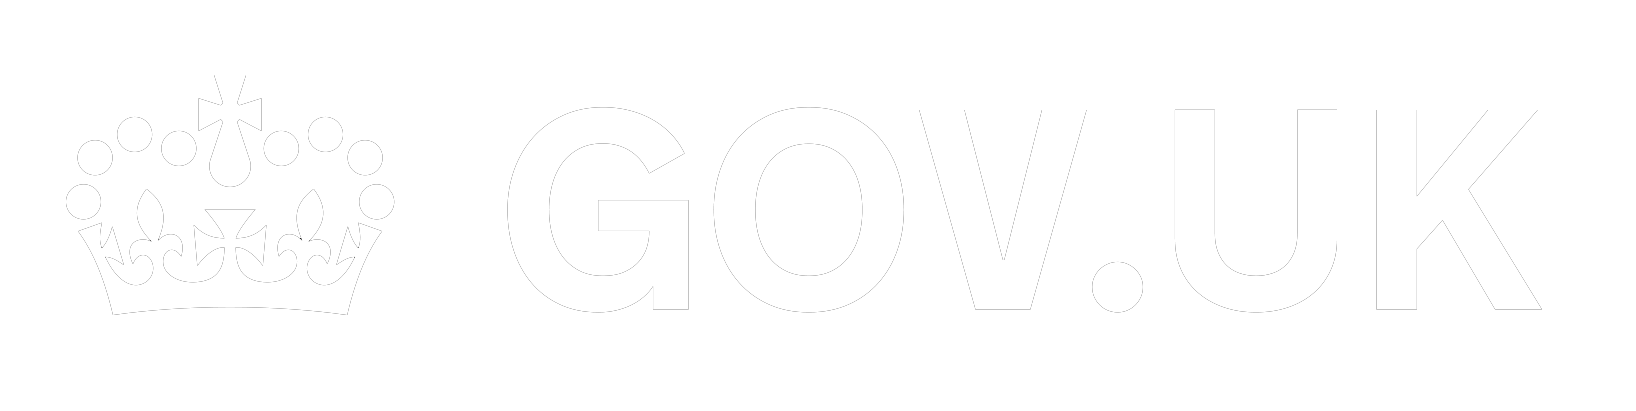 gov uk logo